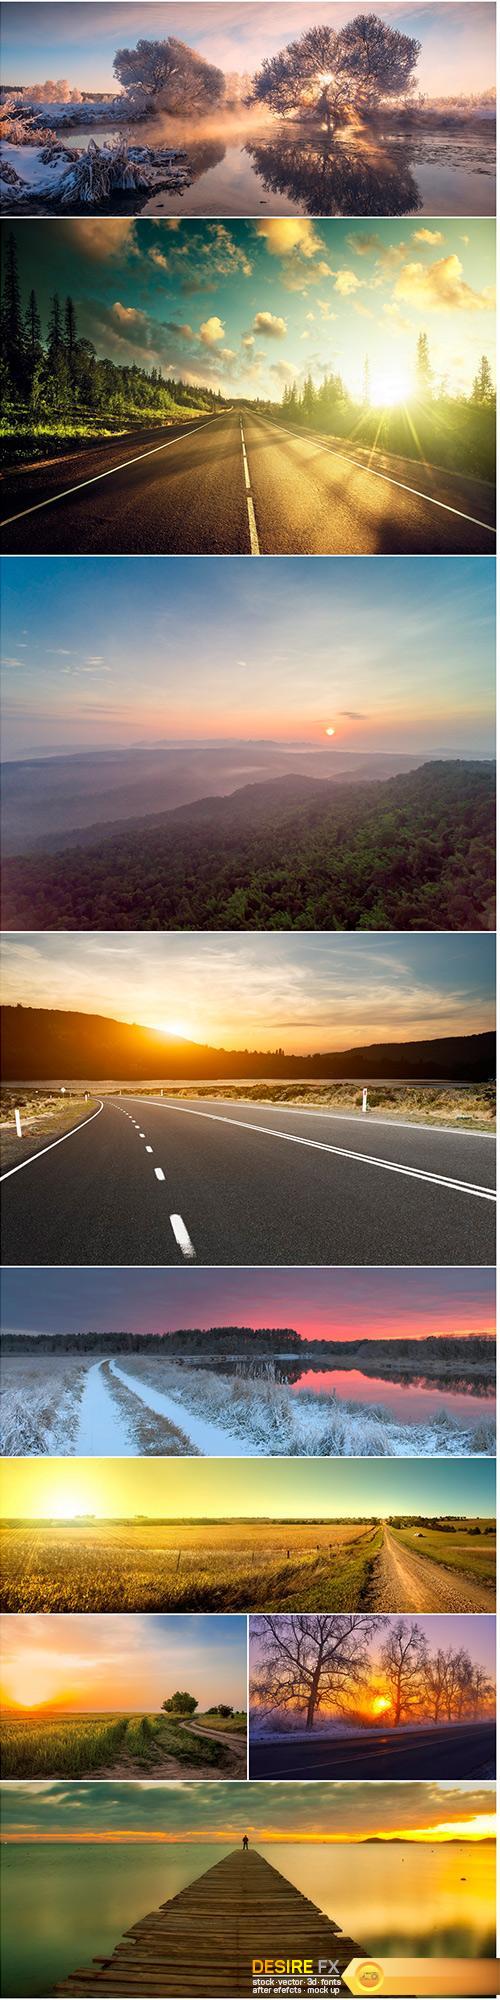 Sunrise & road - 9UHQ JPEG